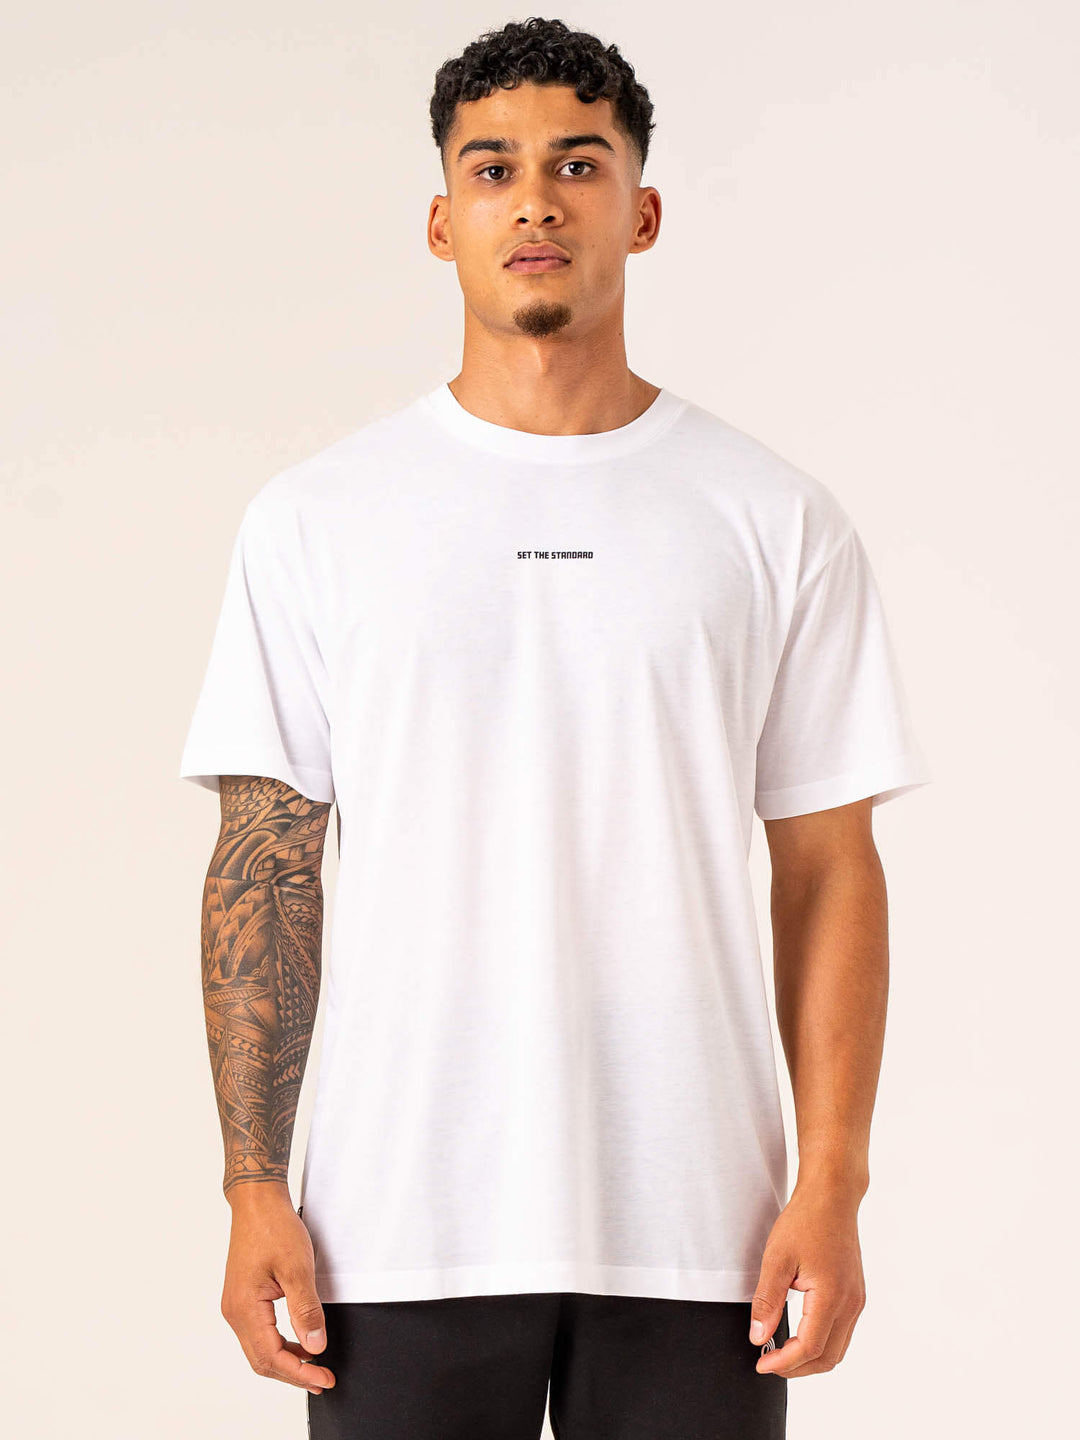 Emerge Oversized T-Shirt - White Clothing Ryderwear 